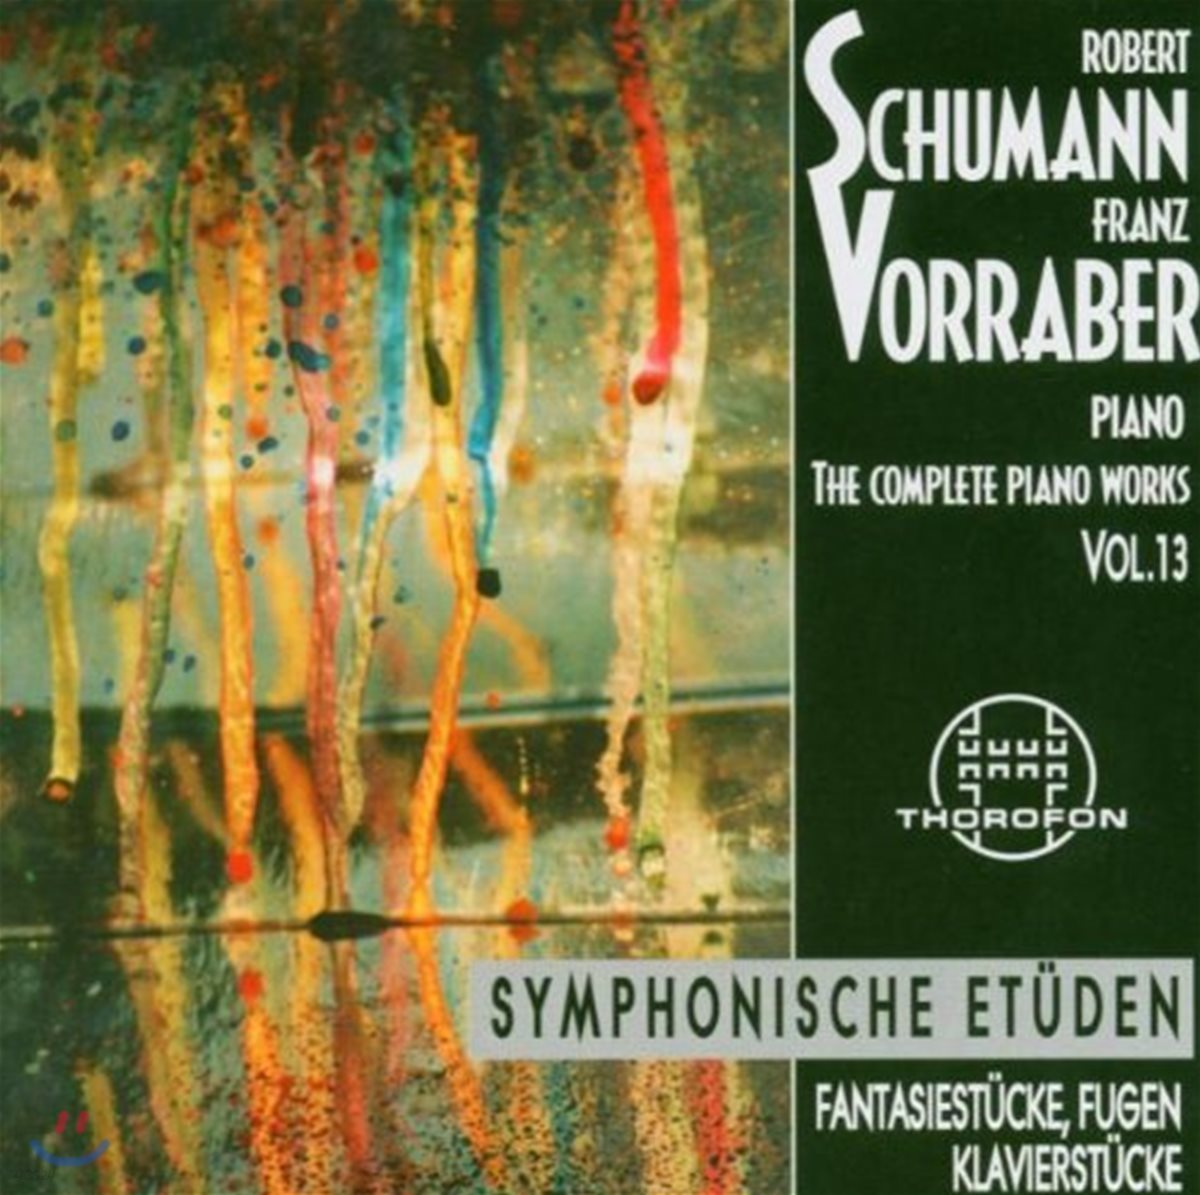 Franz Vorraber 슈만: 피아노 작품 전집 (Schumann: Complete Piano Works 13)